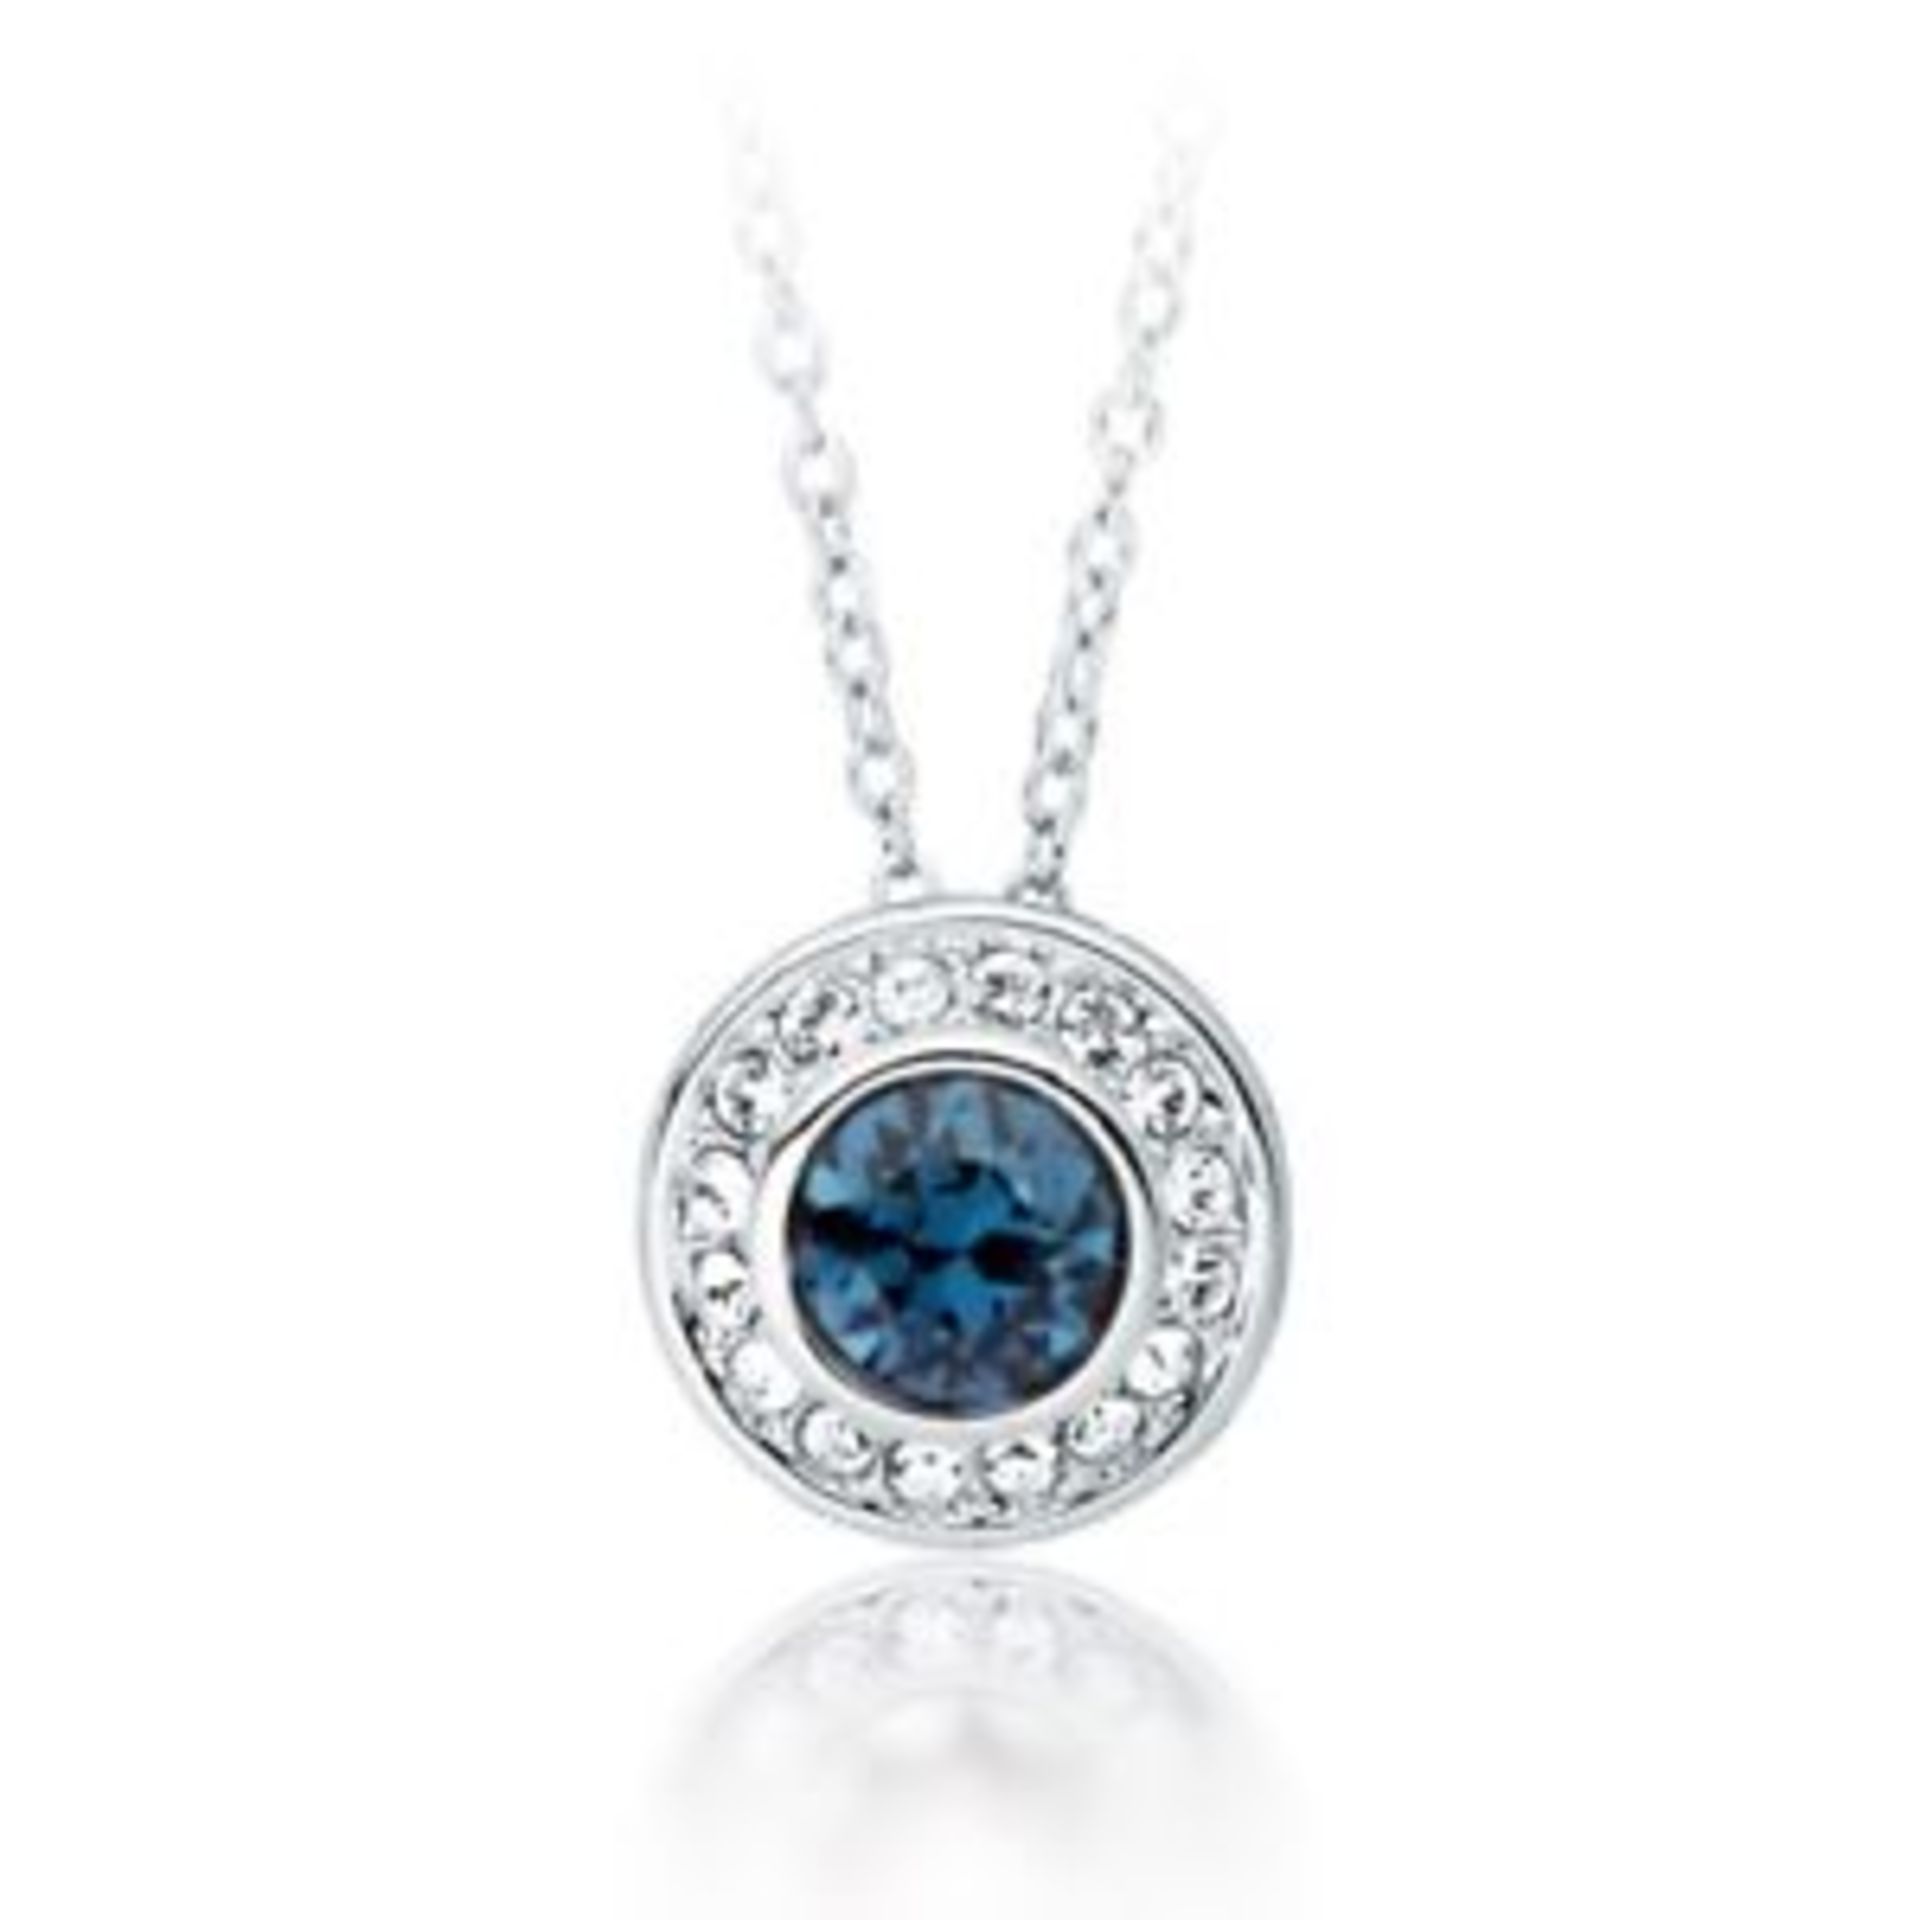 V Brand New Eternity Swarovski Blue Crystal Pendant On Chain